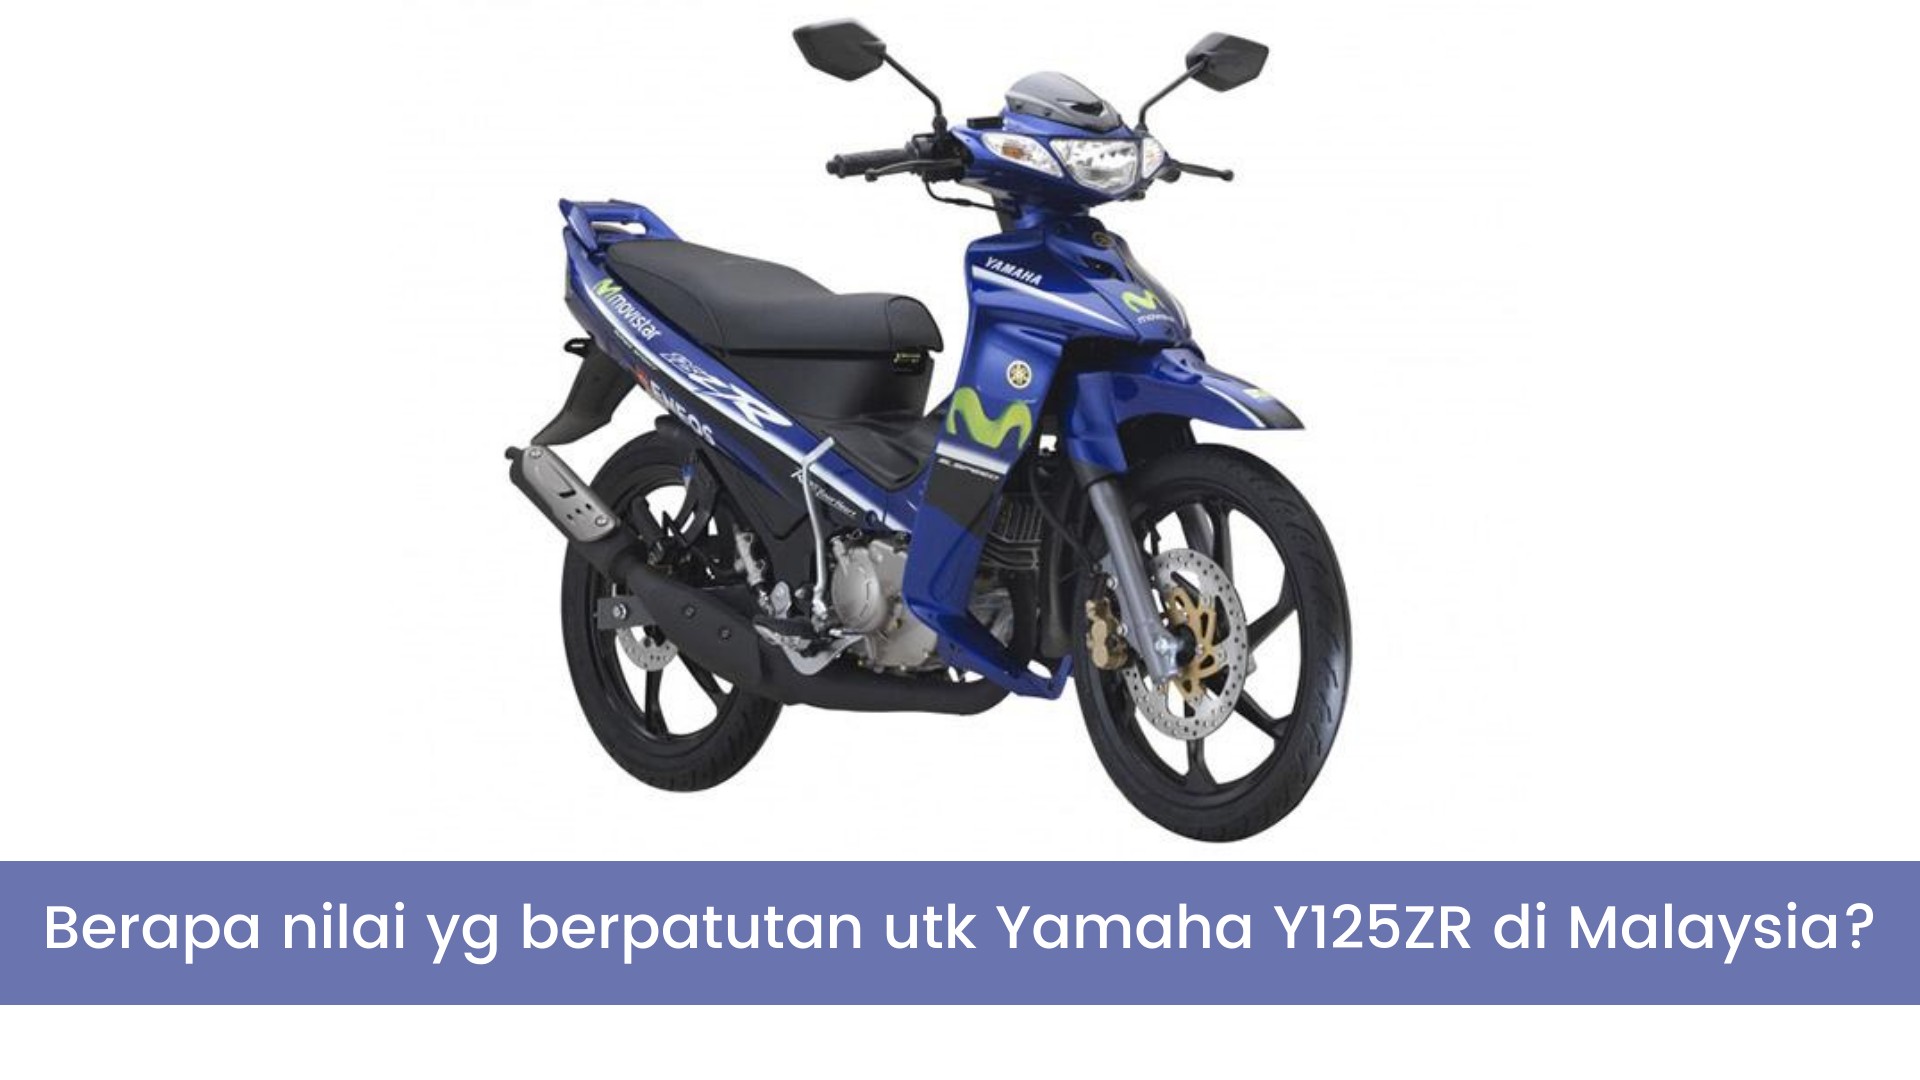 Apakah Harga Yang Berpatutan Untuk Yamaha Y125ZR Di Malaysia? Jawapan Di Sini!